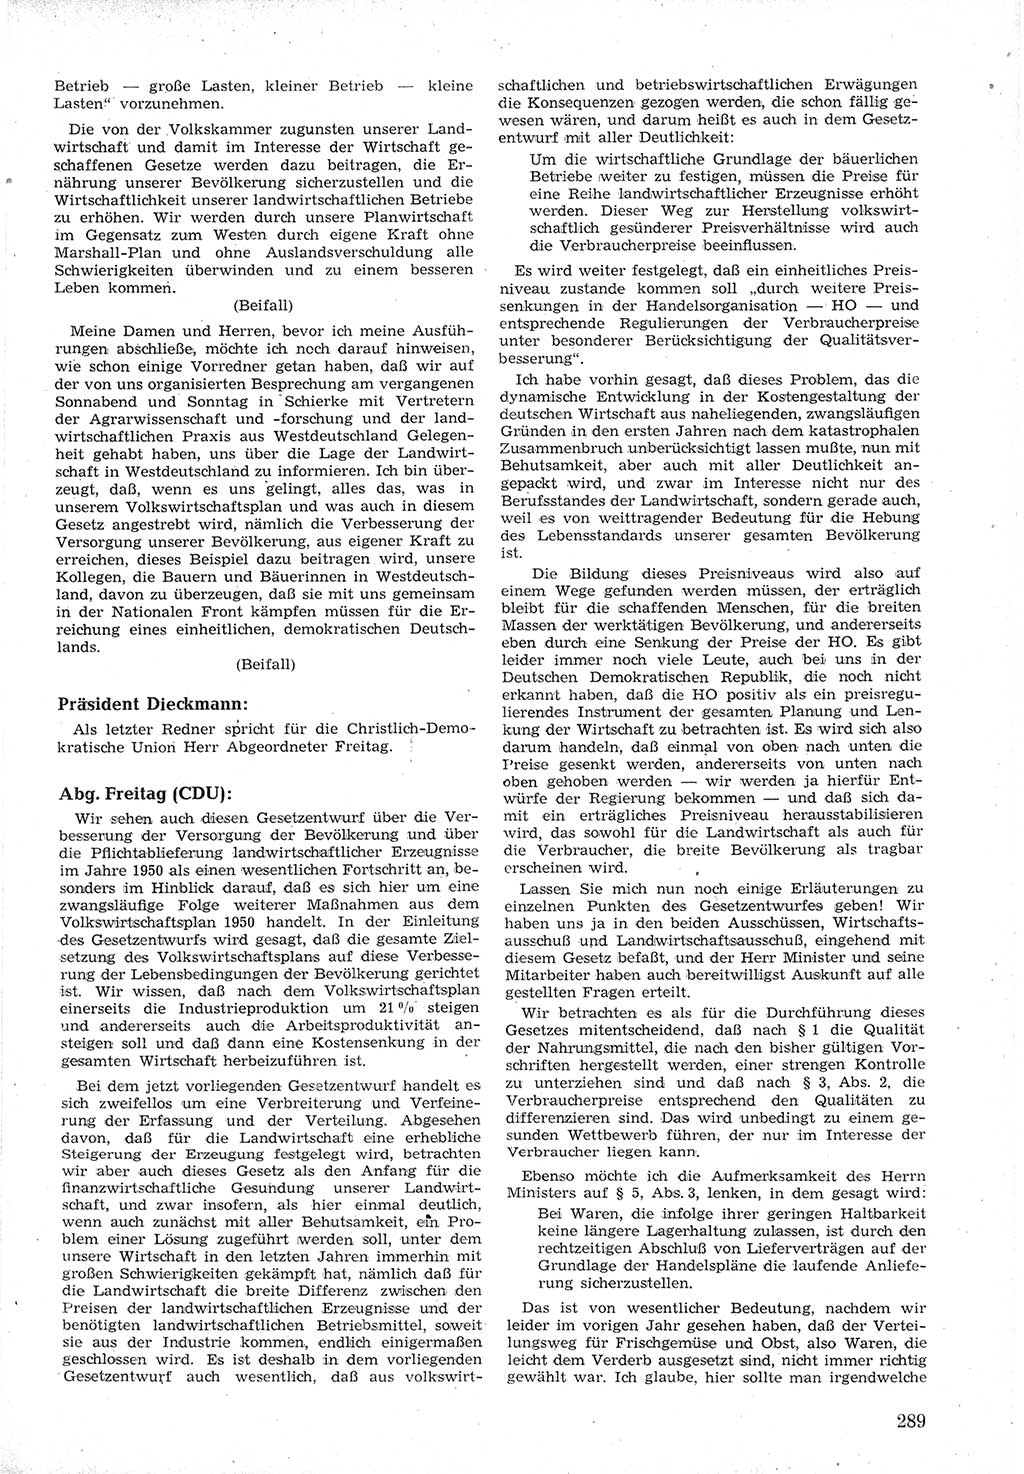 Provisorische Volkskammer (VK) der Deutschen Demokratischen Republik (DDR) 1949-1950, Dokument 303 (Prov. VK DDR 1949-1950, Dok. 303)